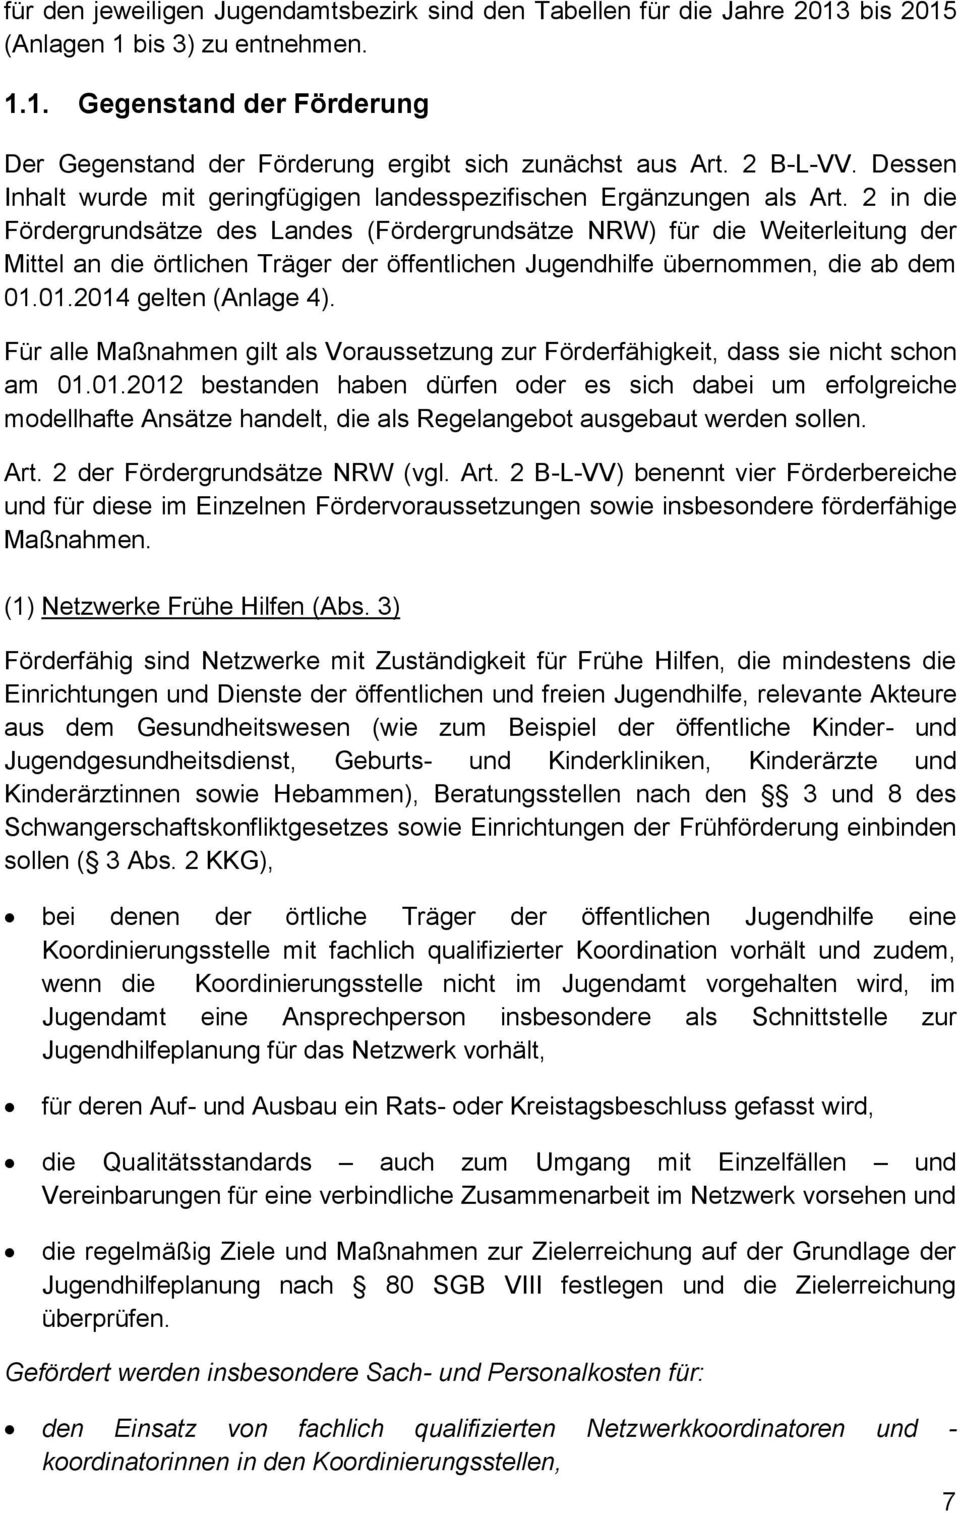 2 in die Fördergrundsätze des Landes (Fördergrundsätze NRW) für die Weiterleitung der Mittel an die örtlichen Träger der öffentlichen Jugendhilfe übernommen, die ab dem 01.01.2014 gelten (Anlage 4).